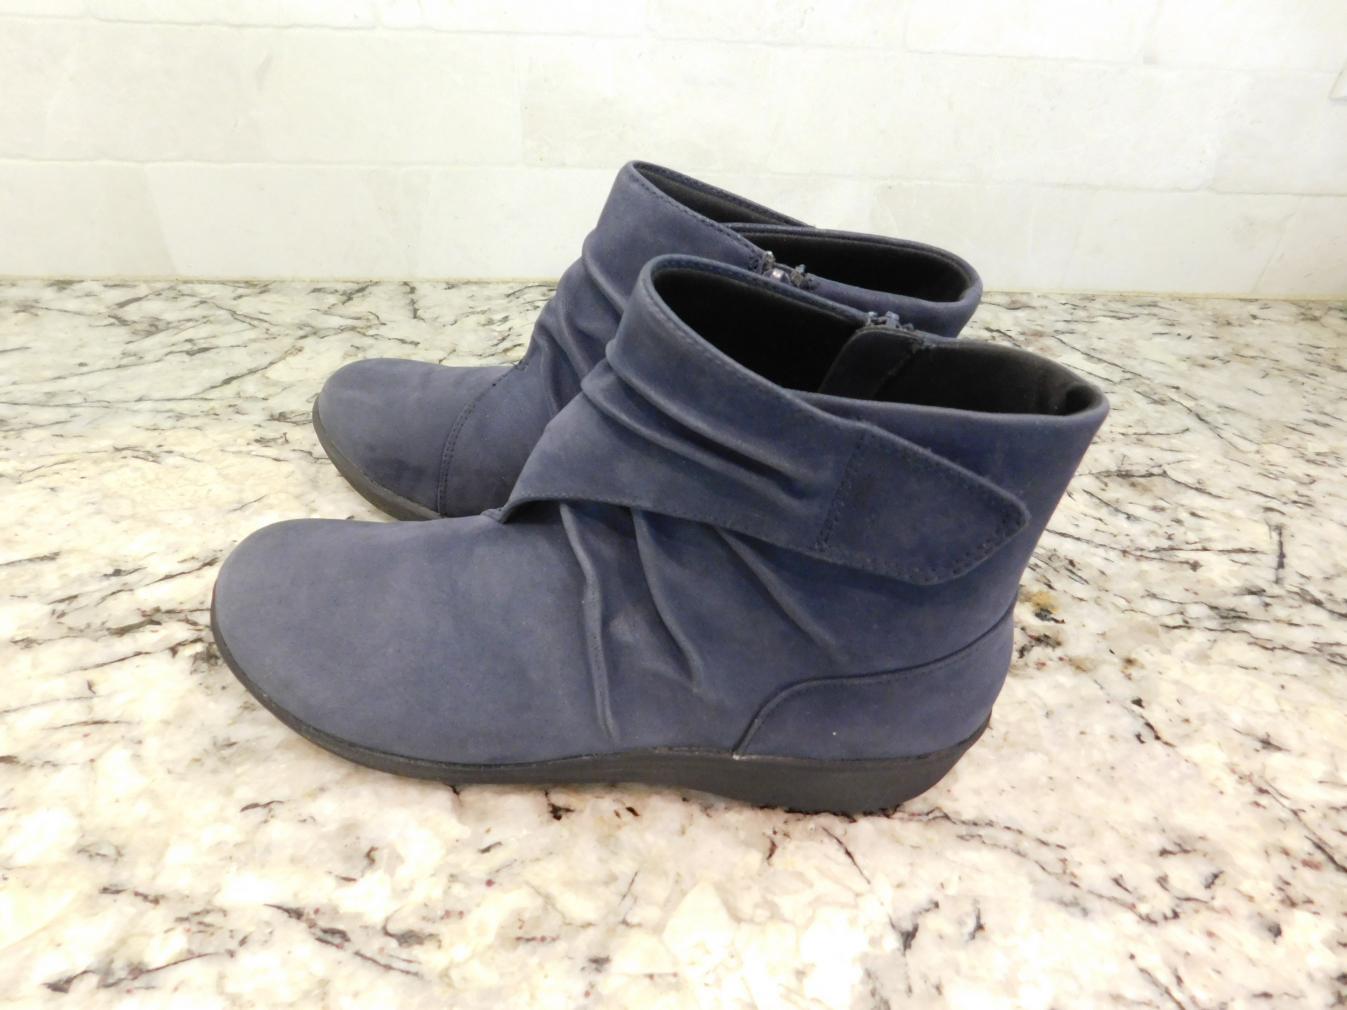 clarks women's sillian tana fashion boot